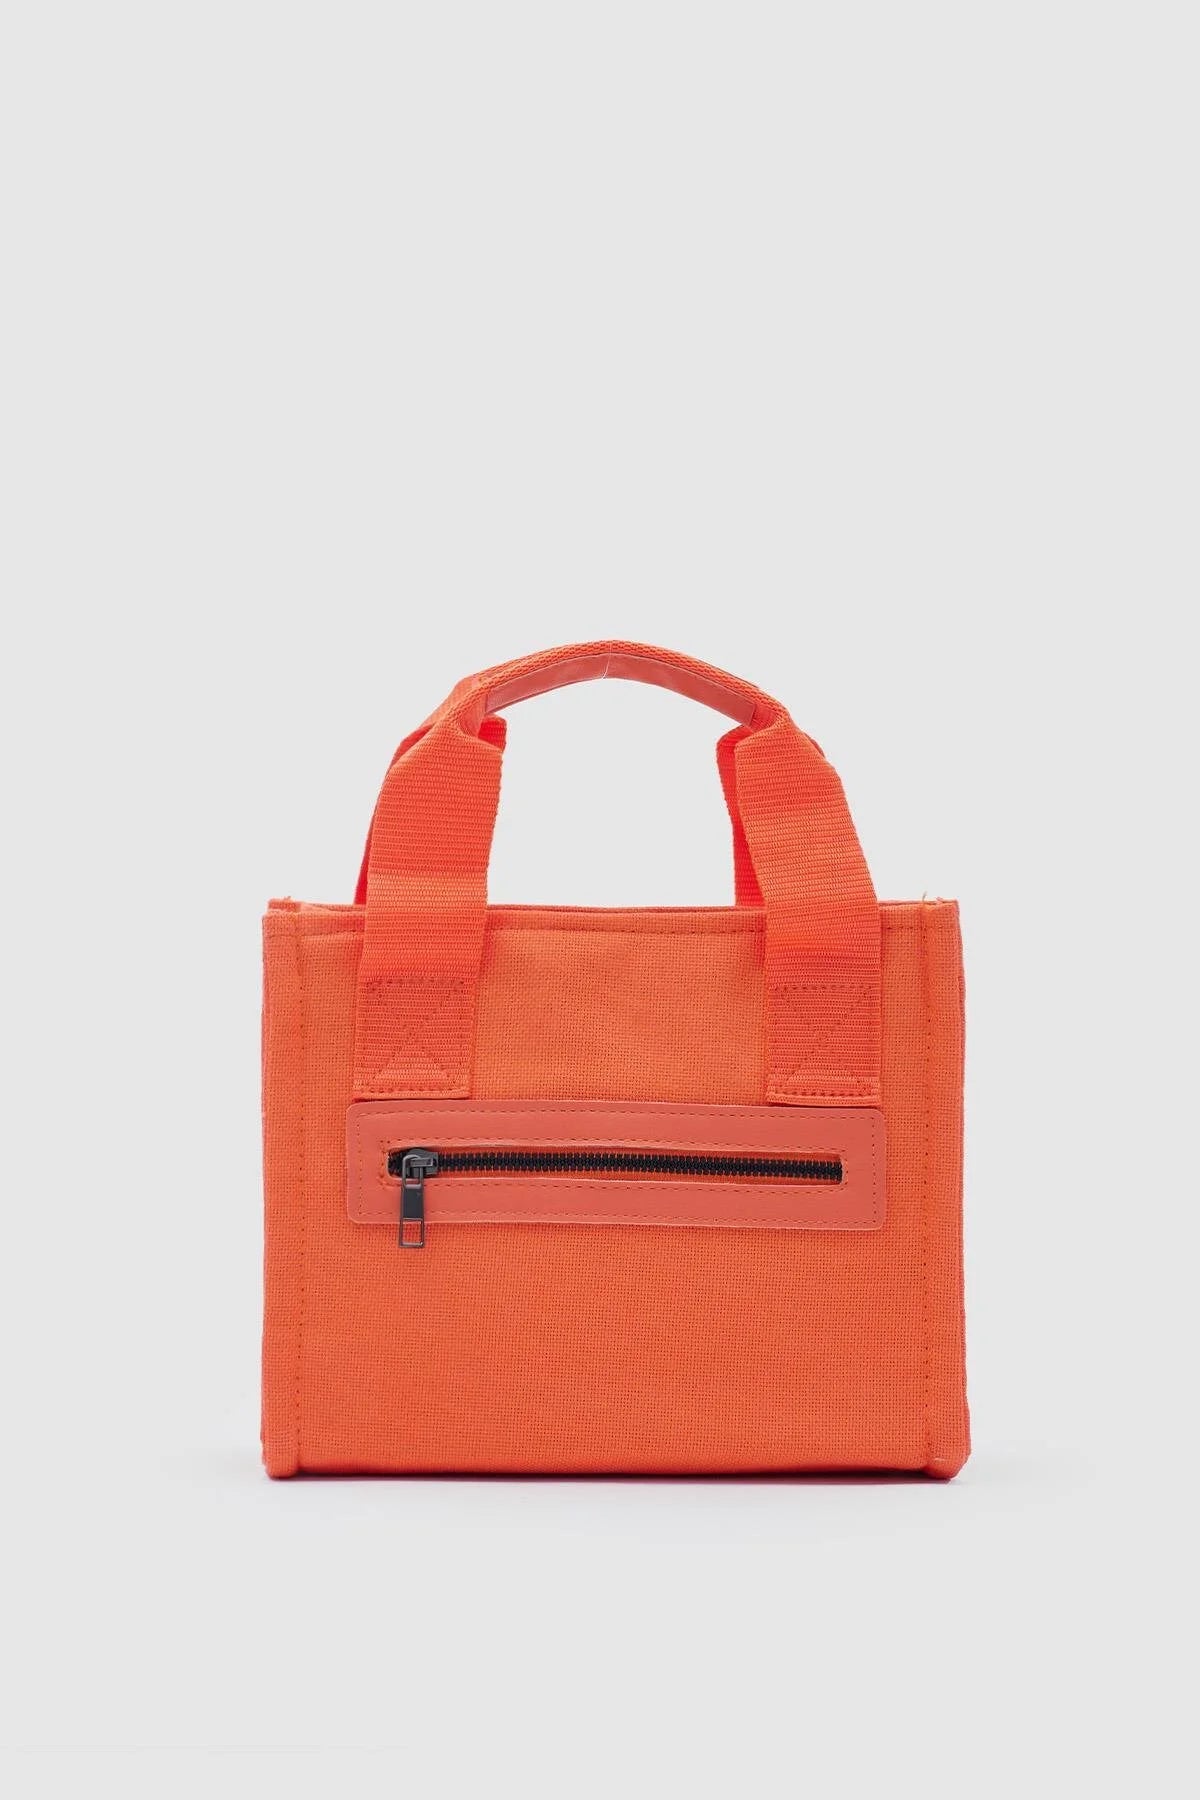 Canvas Fabric Orange Crossbody Bag bag LUNARITY GARAGE   